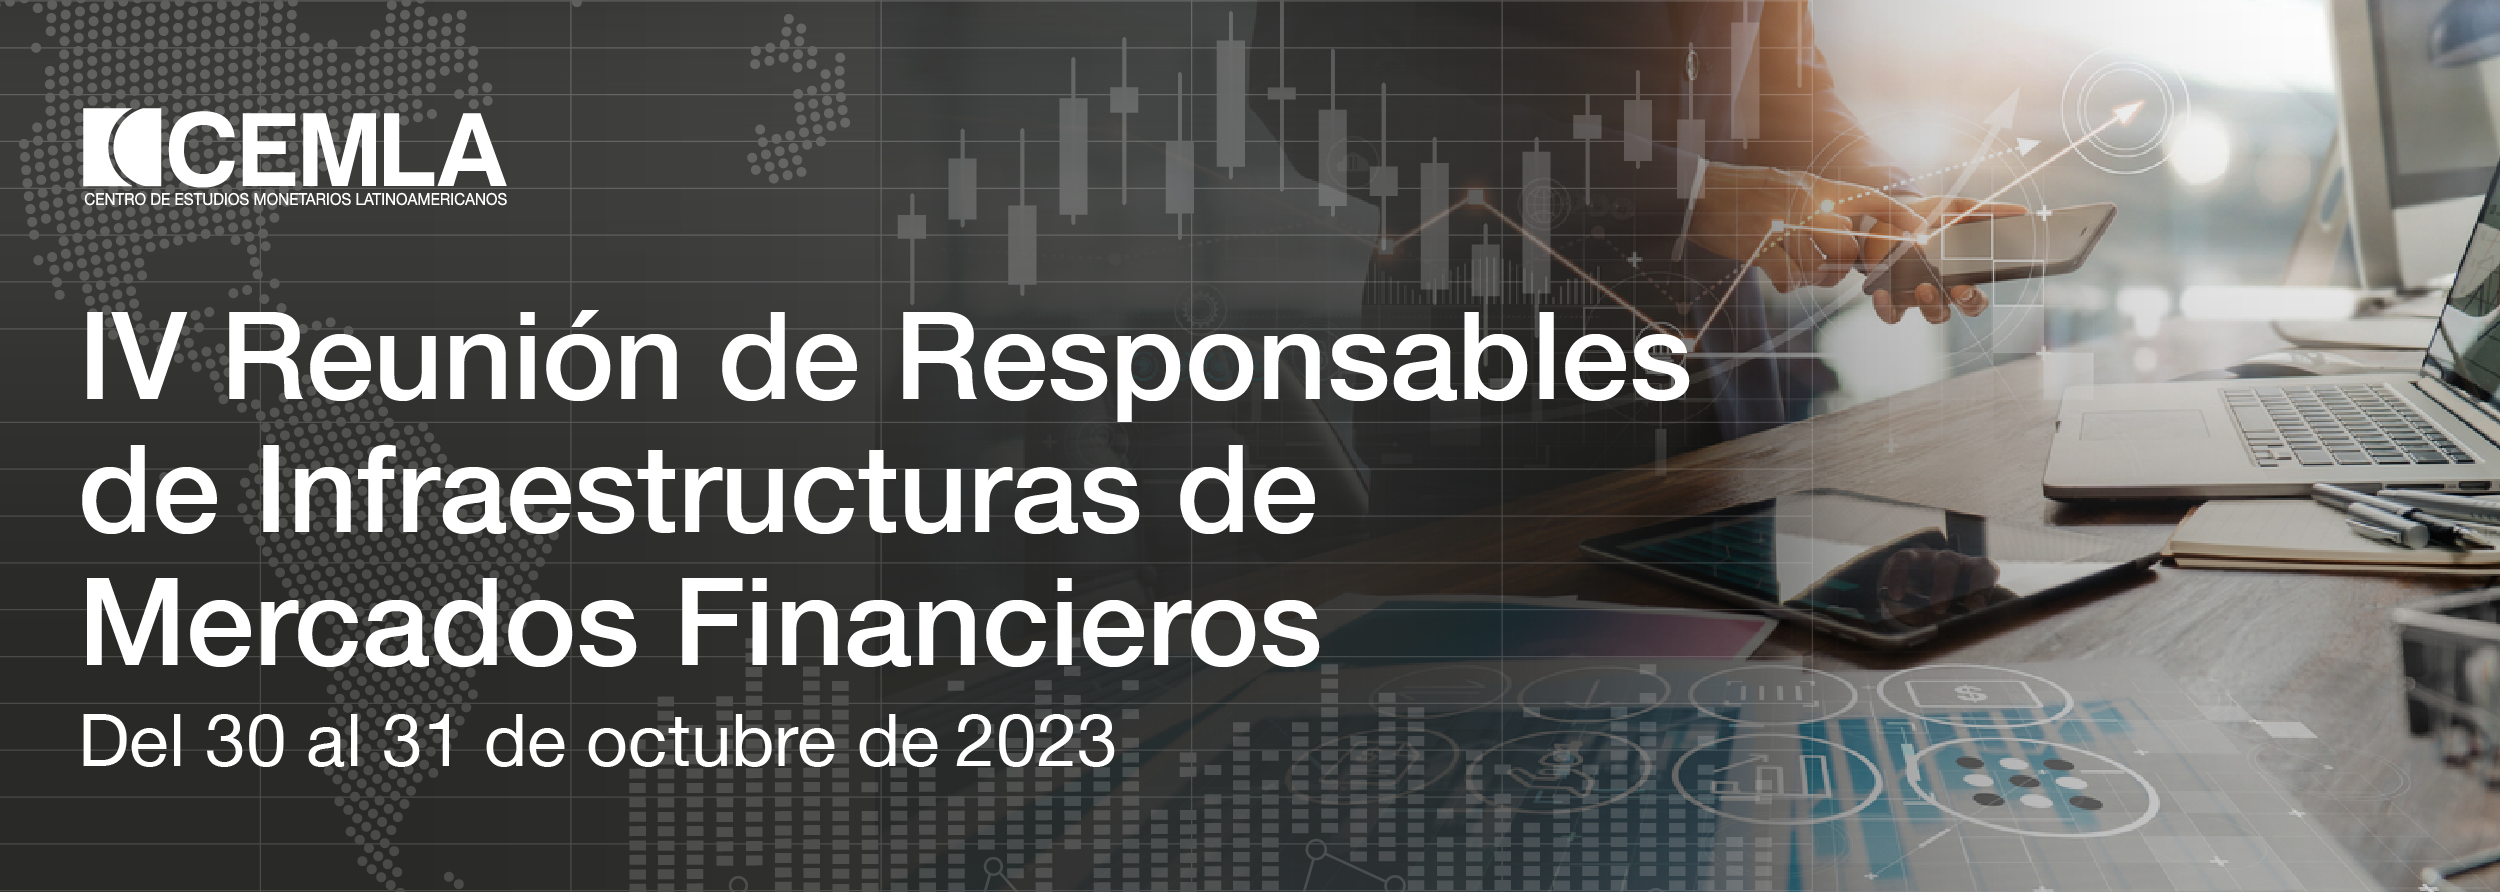 IV Reunión de Responsables de Infraestructuras de Mercados Financieros 